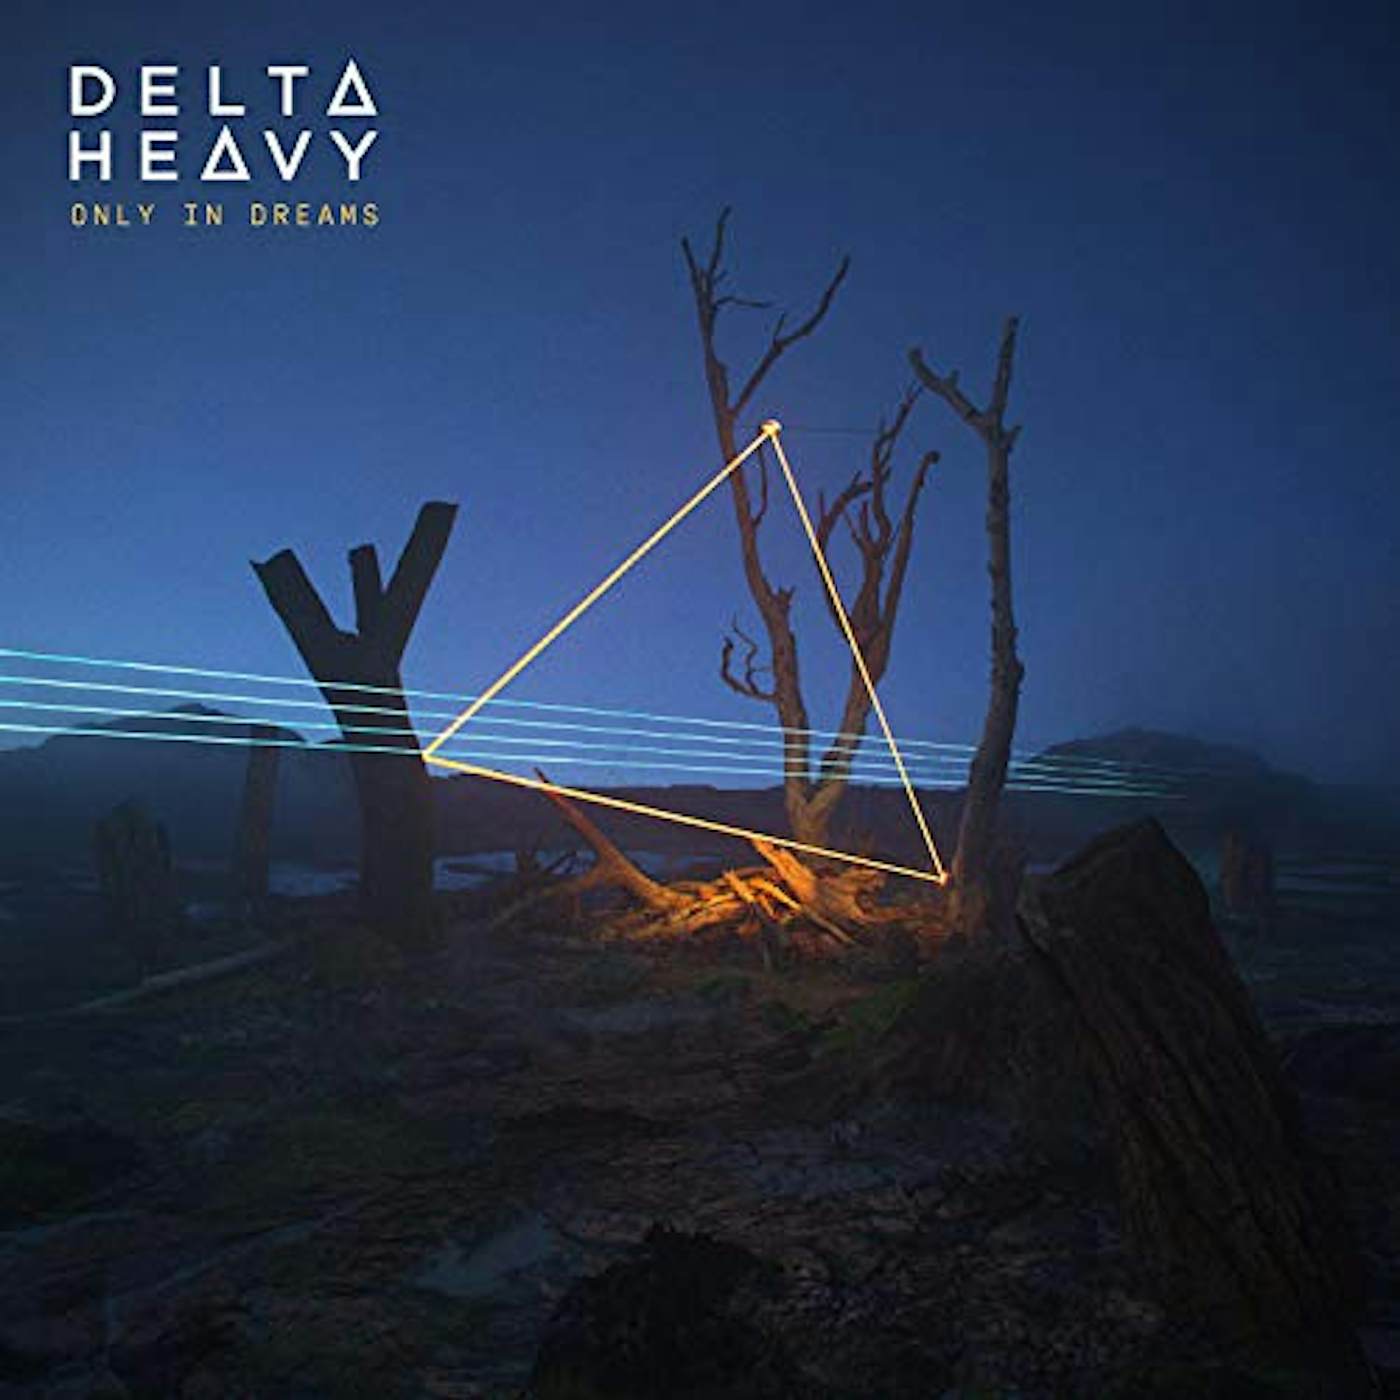 Delta Heavy Only In Dreams Vinyl Record